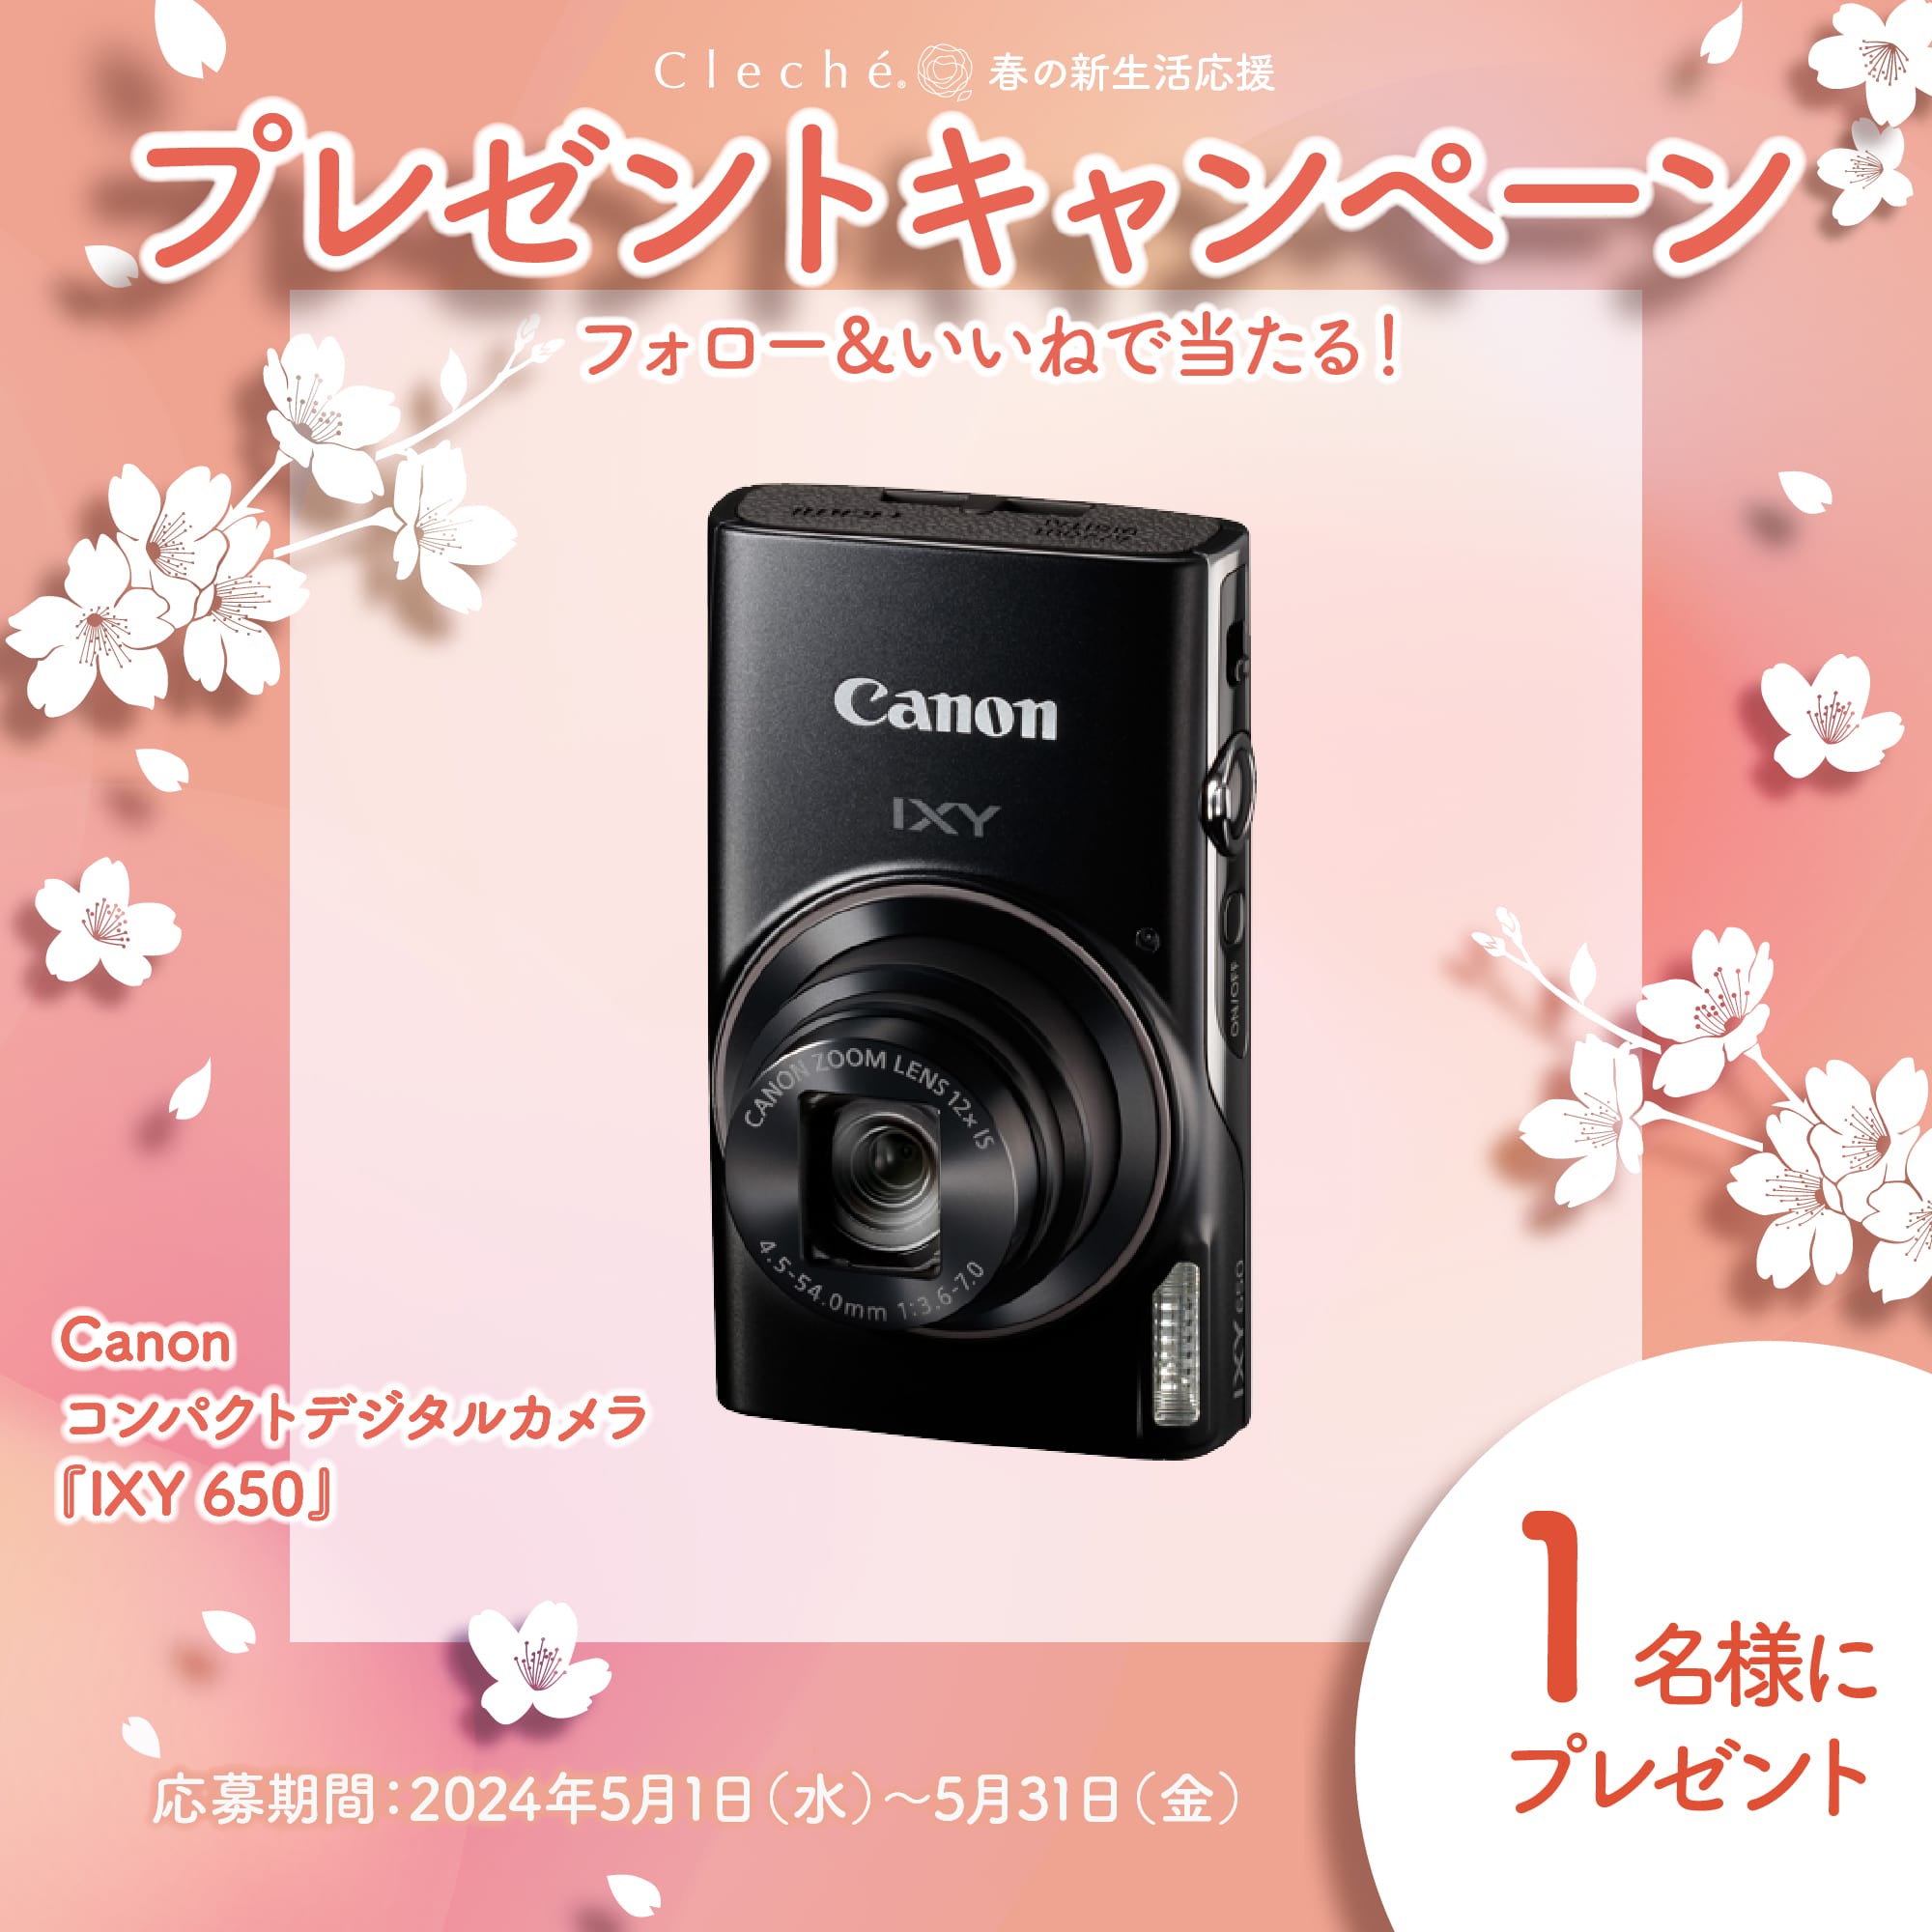 Canon コンパクトデジタルカメラ「IXY 650」